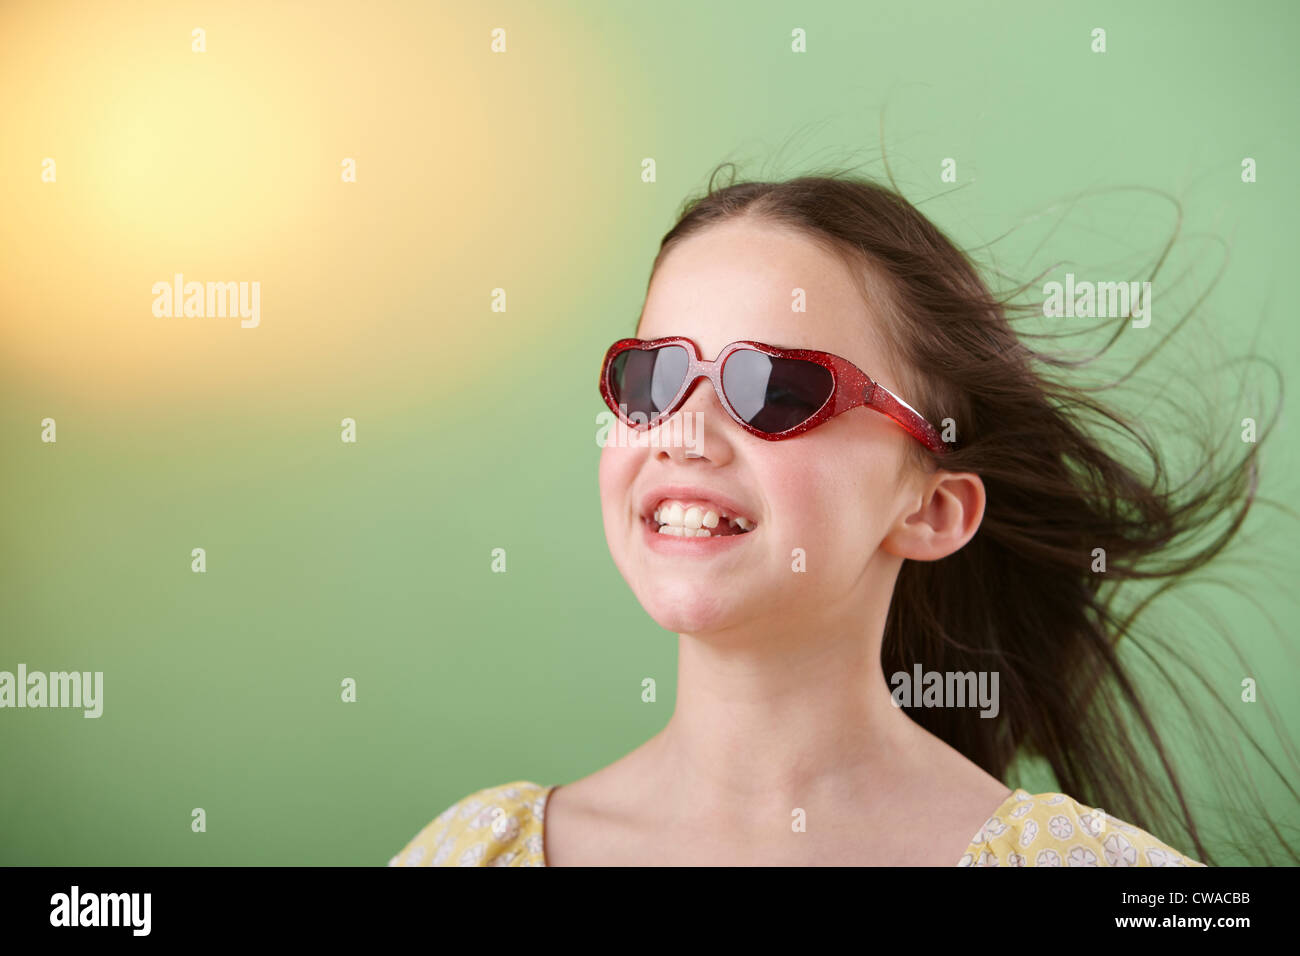 Girl wearing sunglasses Stock Photo